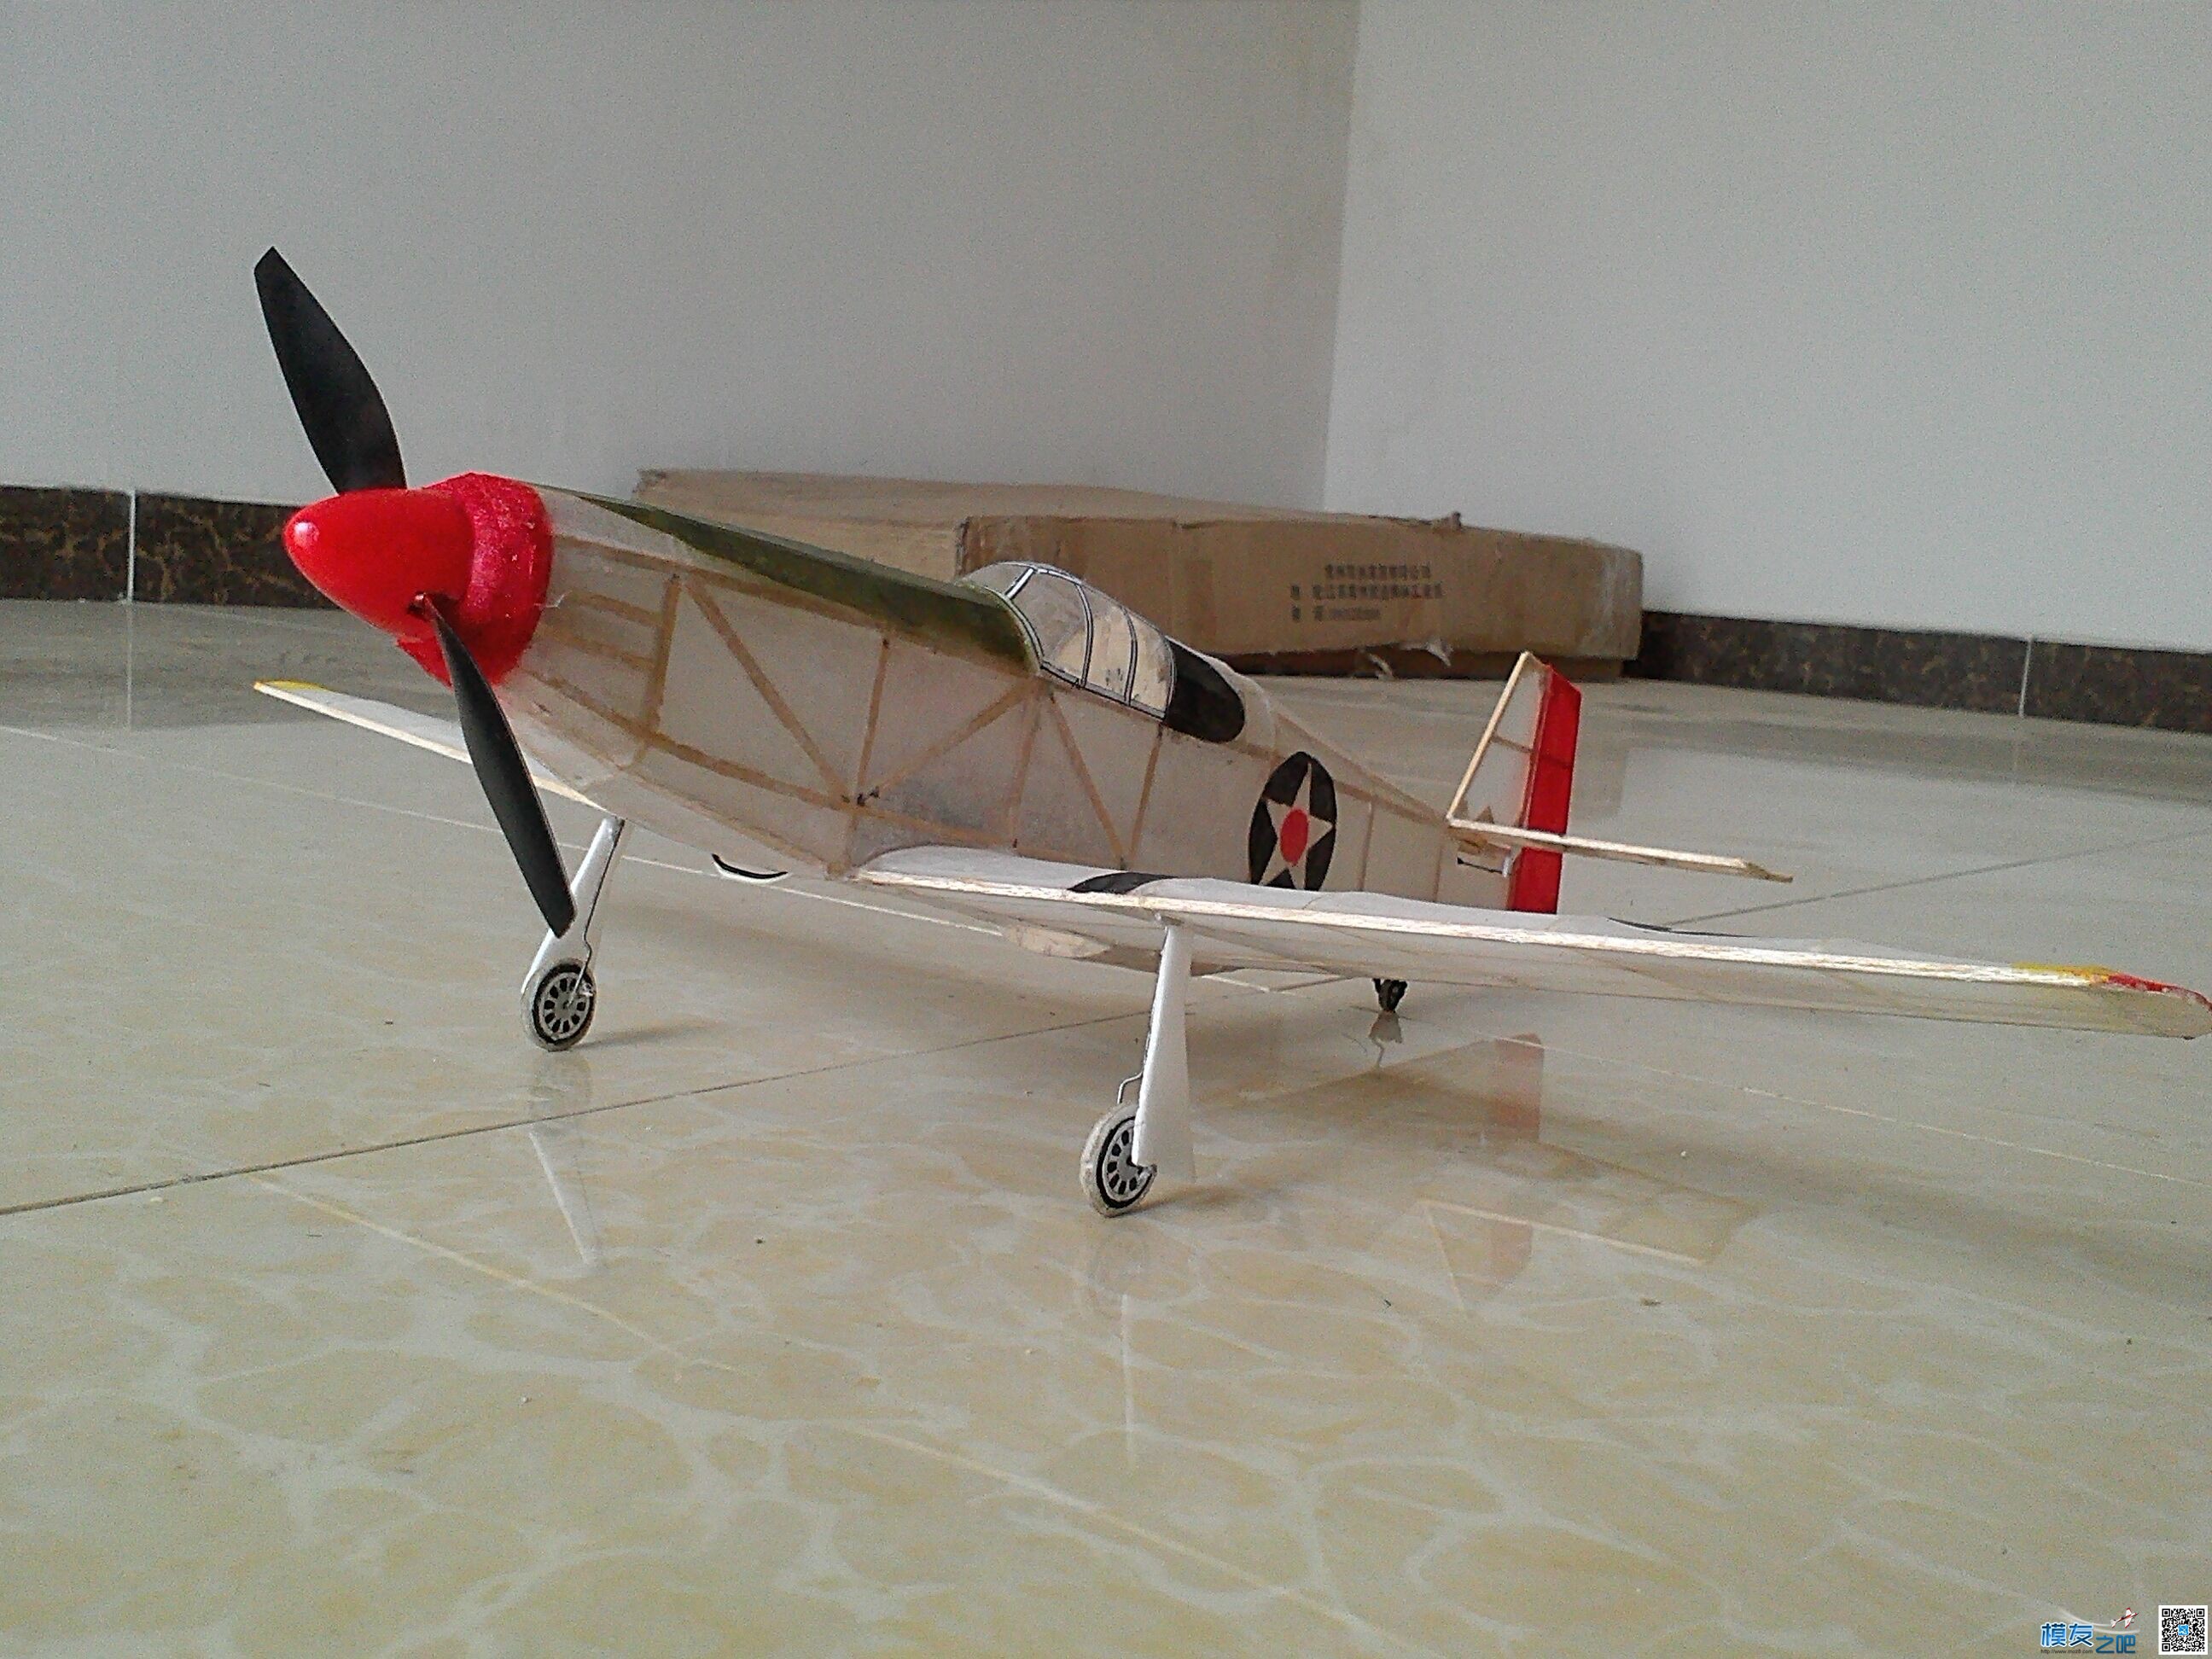 迷你轻木机野马P51a 固定翼,舵机,图纸,接收机 作者:飞翔的橡皮筋 6916 